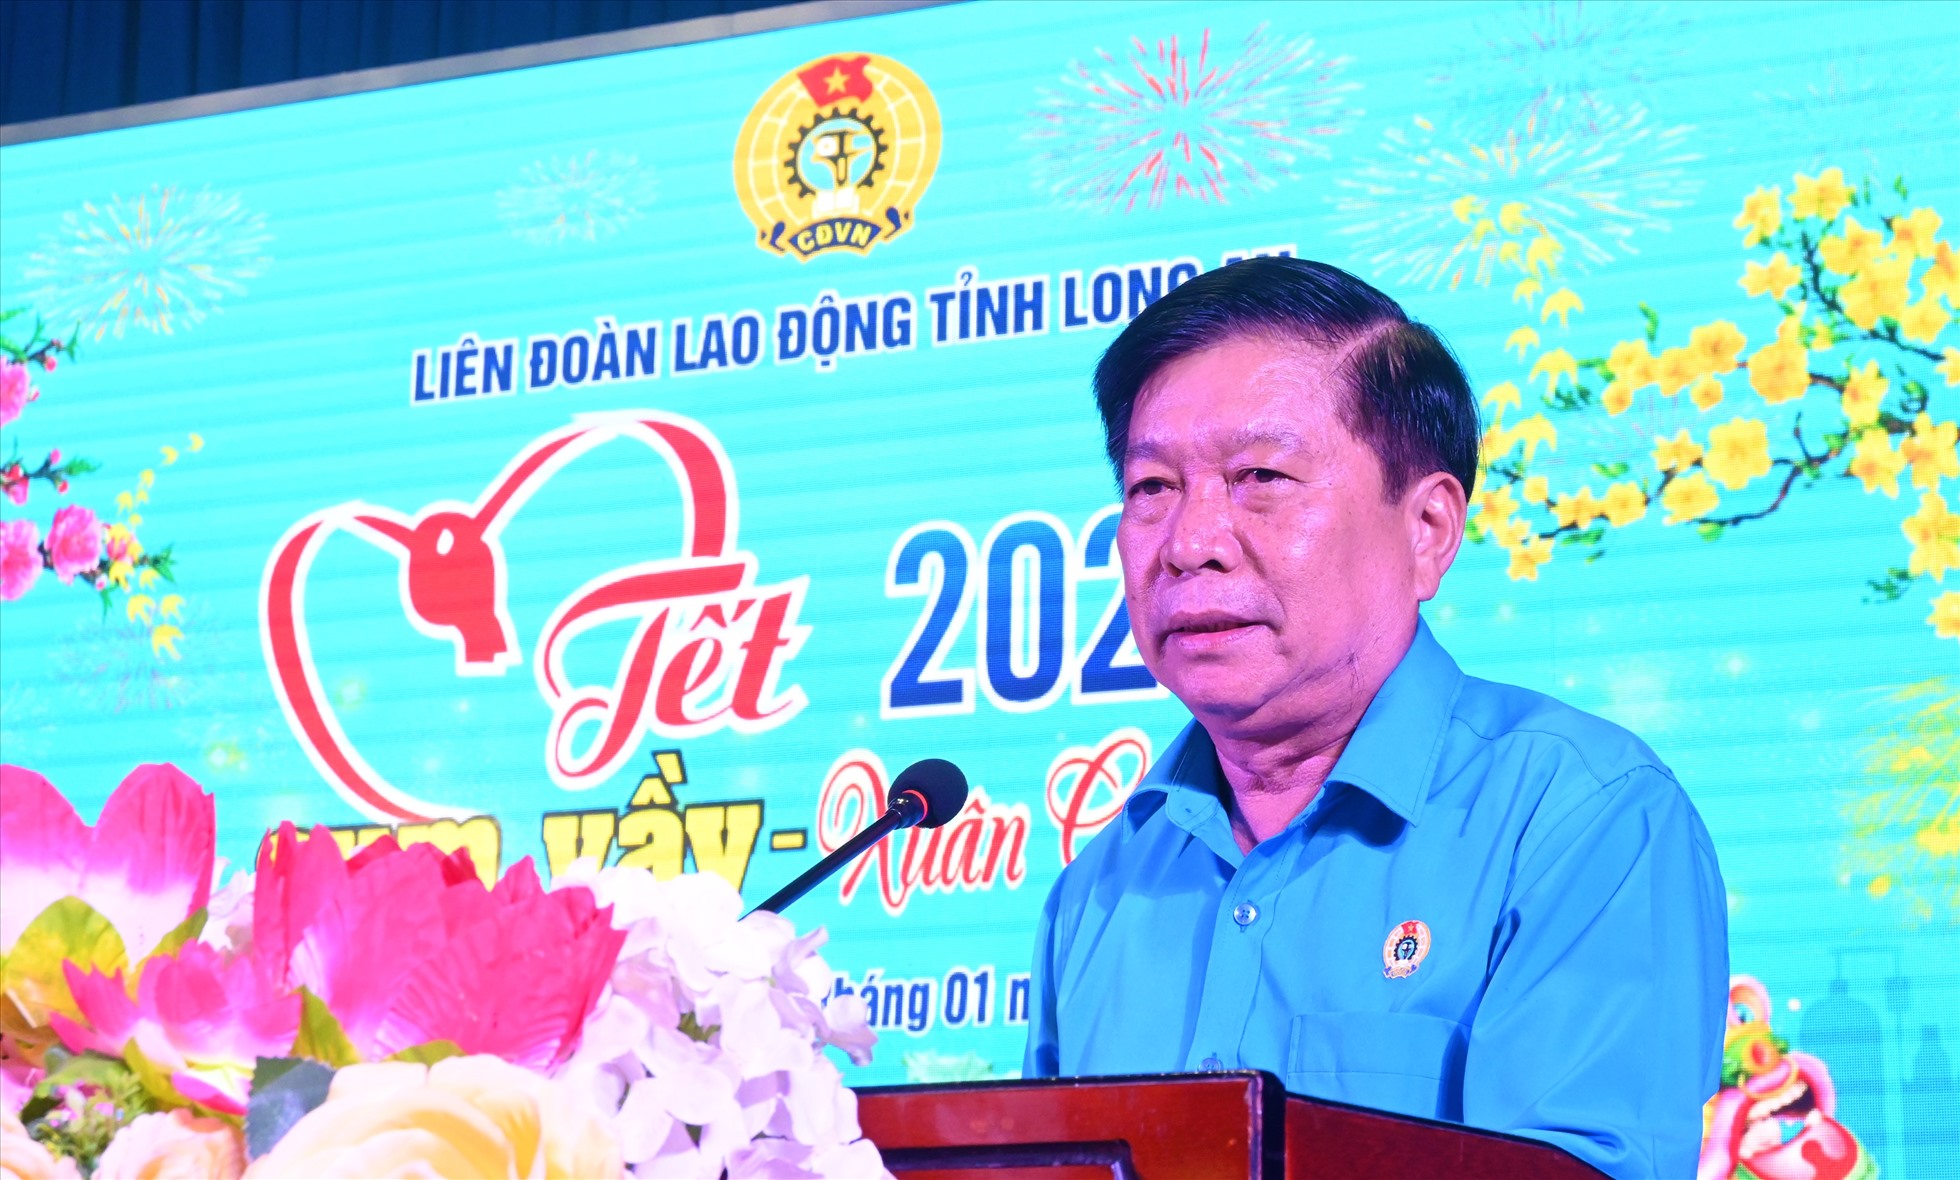 Ông Nguyễn Văn Quí, Chủ tịch LĐLĐ tỉnh Long An phát biểu tại chương trình. Ảnh: Thành Nhân